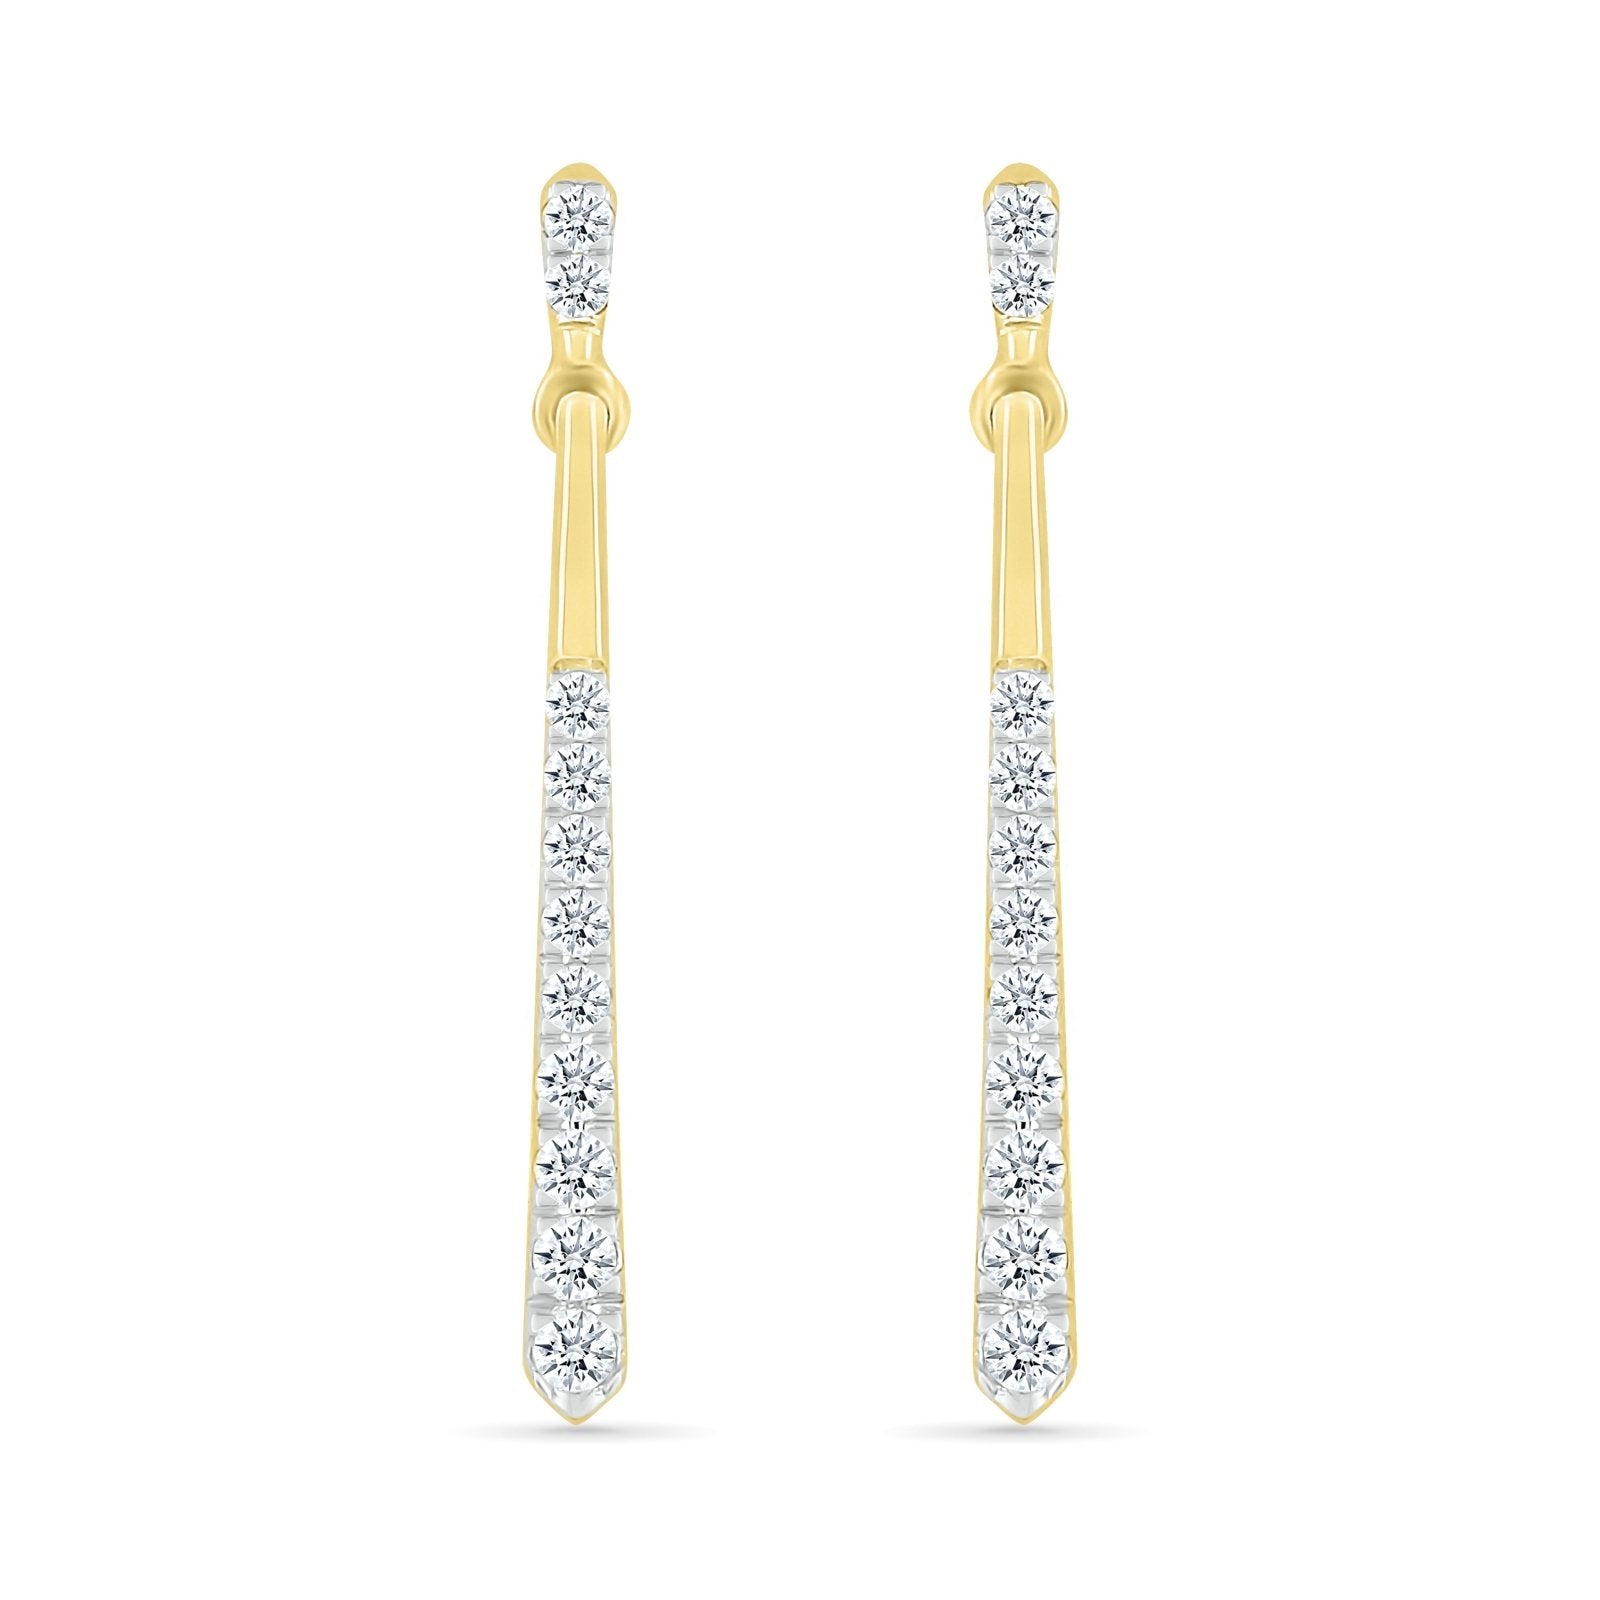 Long Diamond Dangle Stud Earrings Earrings Estella Collection #product_description# 32664 Dangle Earrings Diamond Made to Order #tag4# #tag5# #tag6# #tag7# #tag8# #tag9# #tag10#